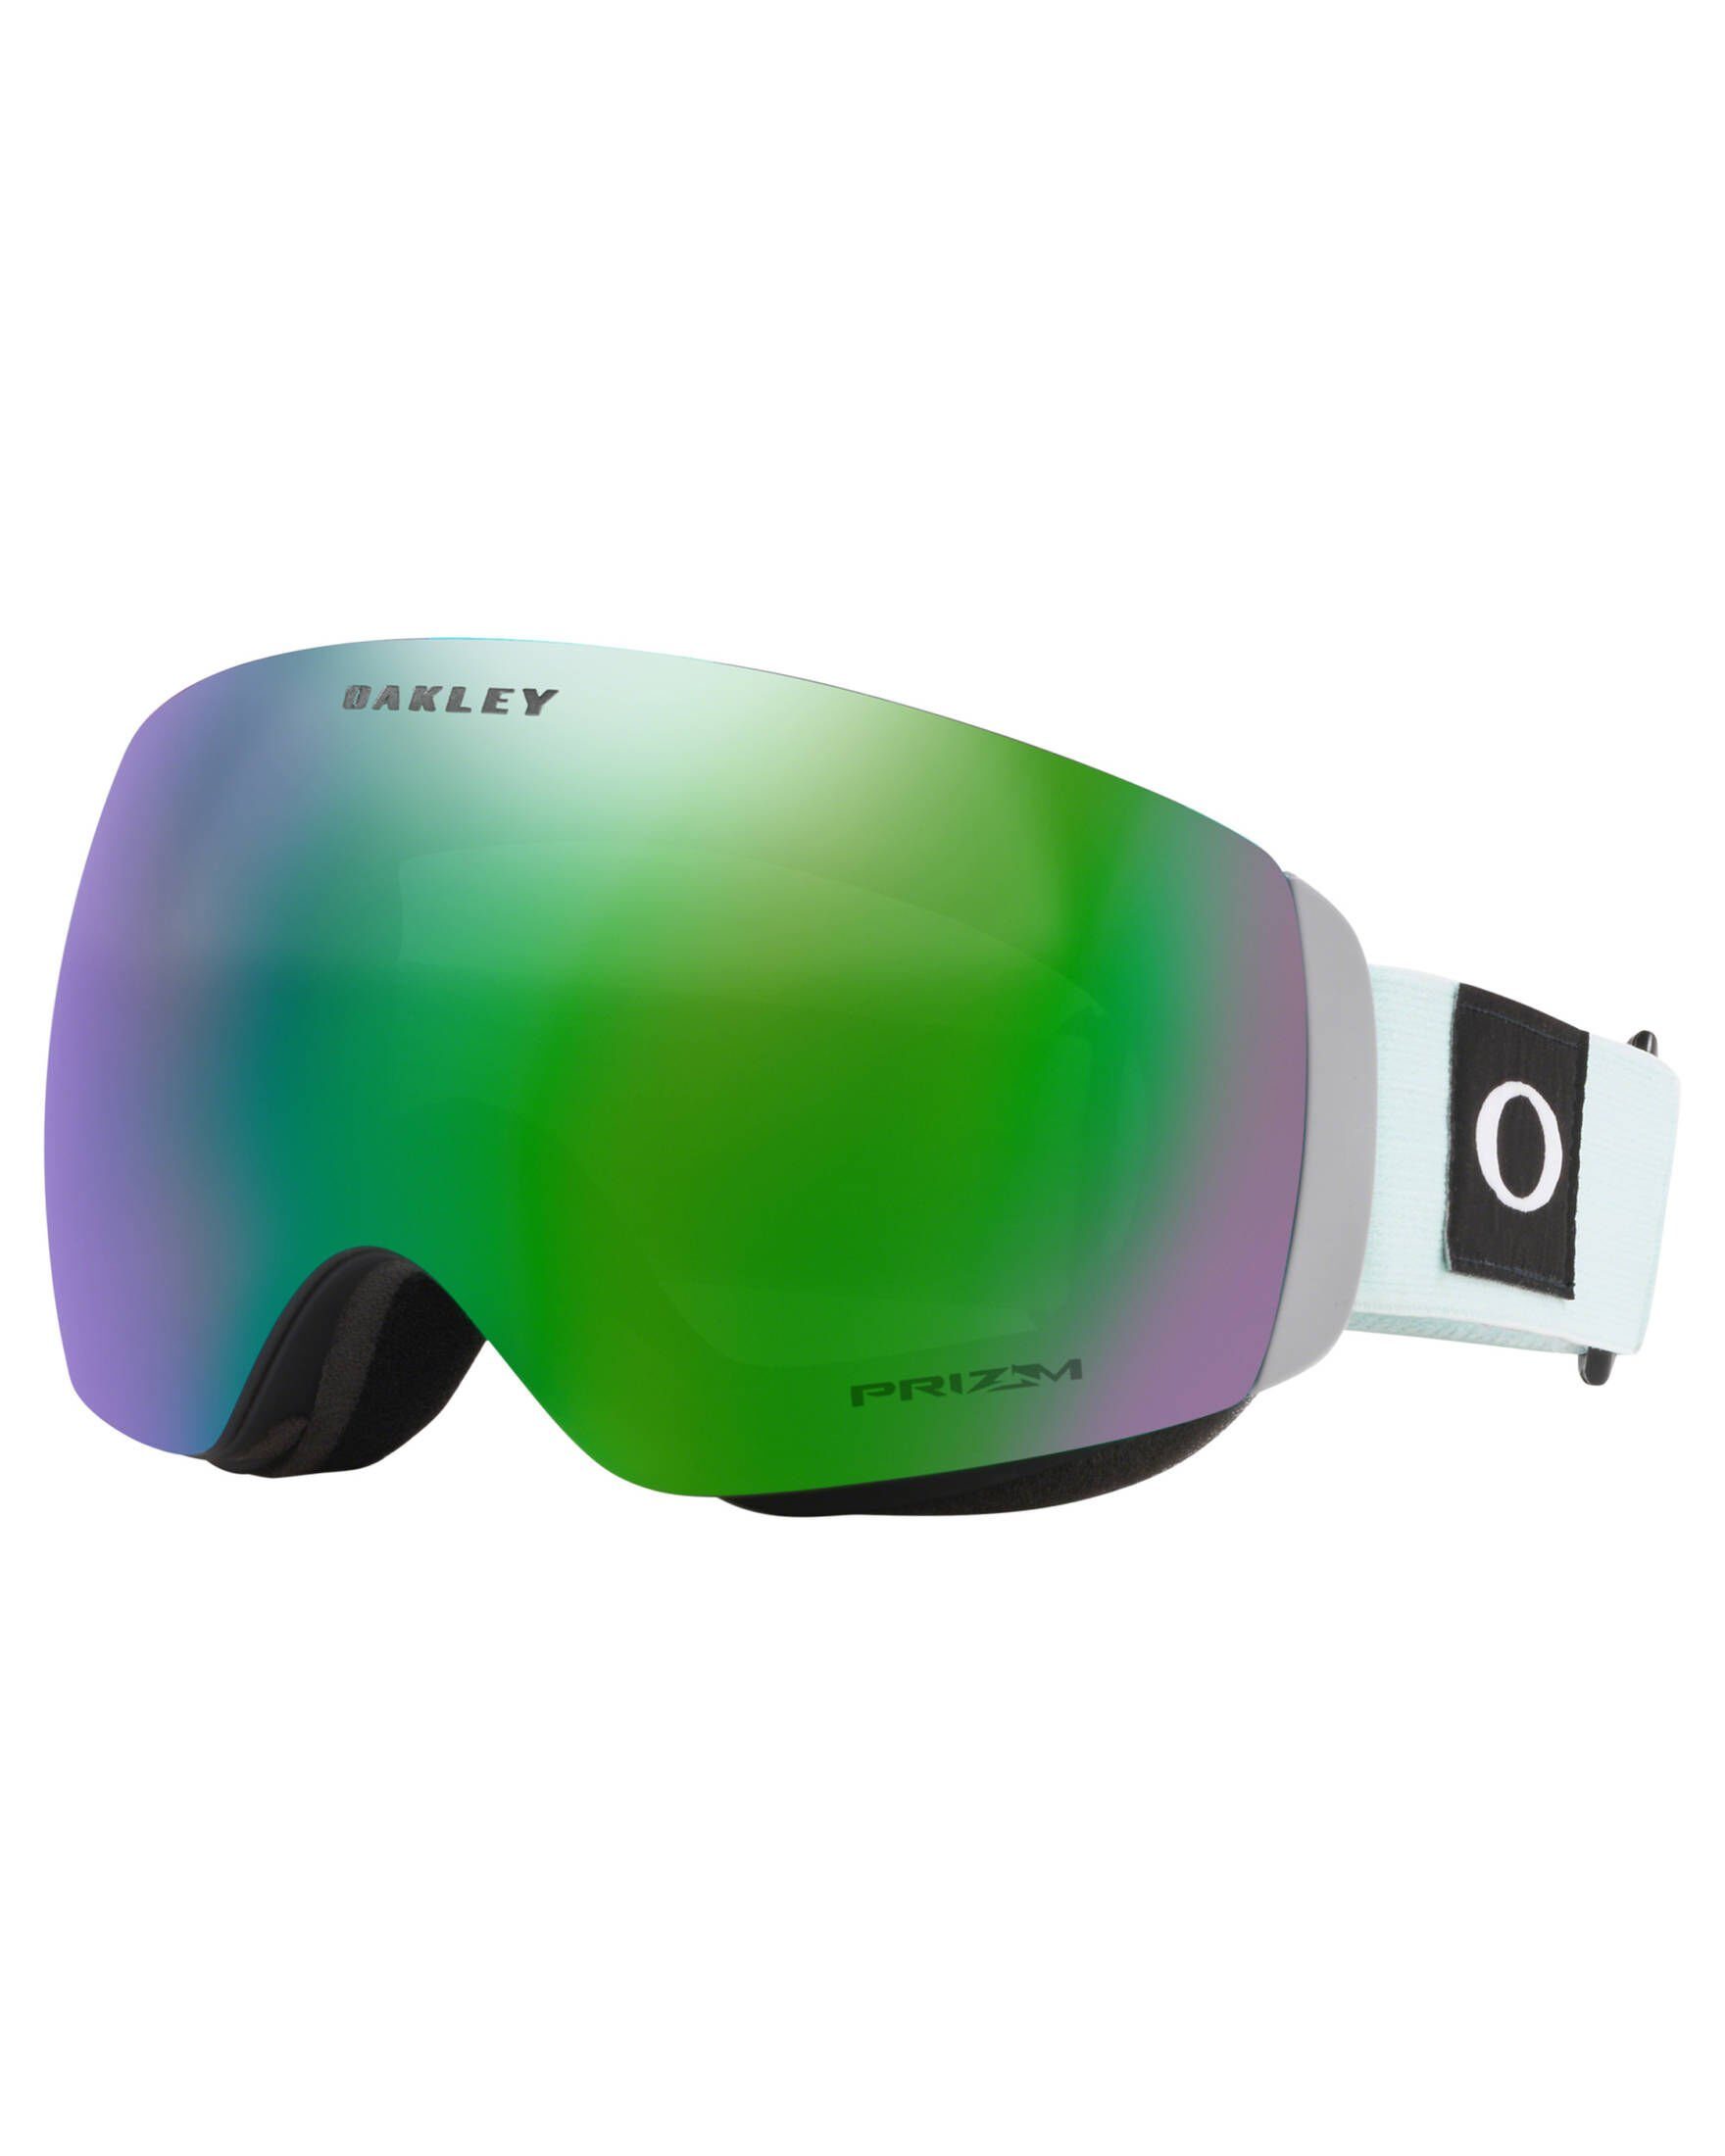 Oakley Skibrille "Flight Deck" Snowboardbrille und Ski-